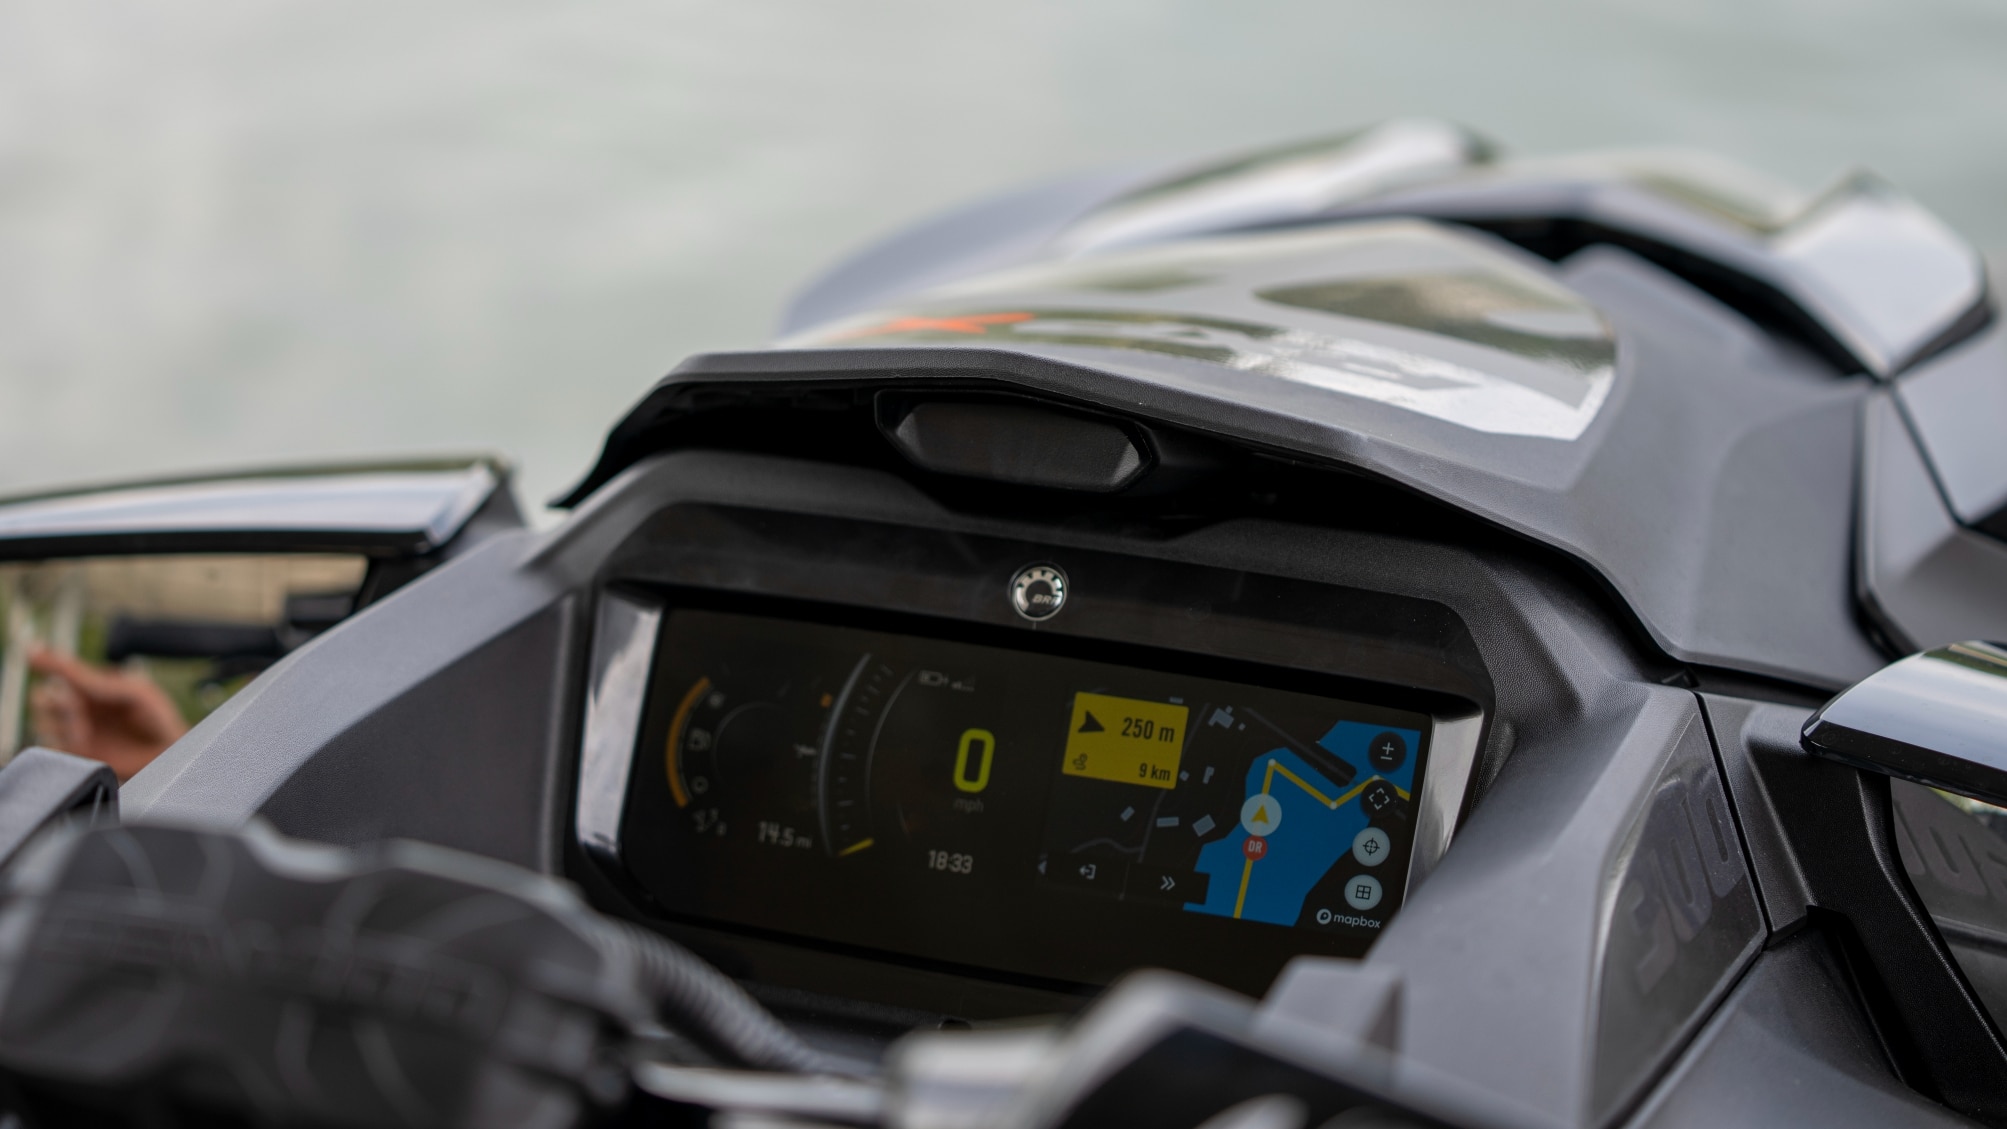  BRP GO! navigointisovellus Sea-Doon 7,8 tuuman LCD-värinäytössä